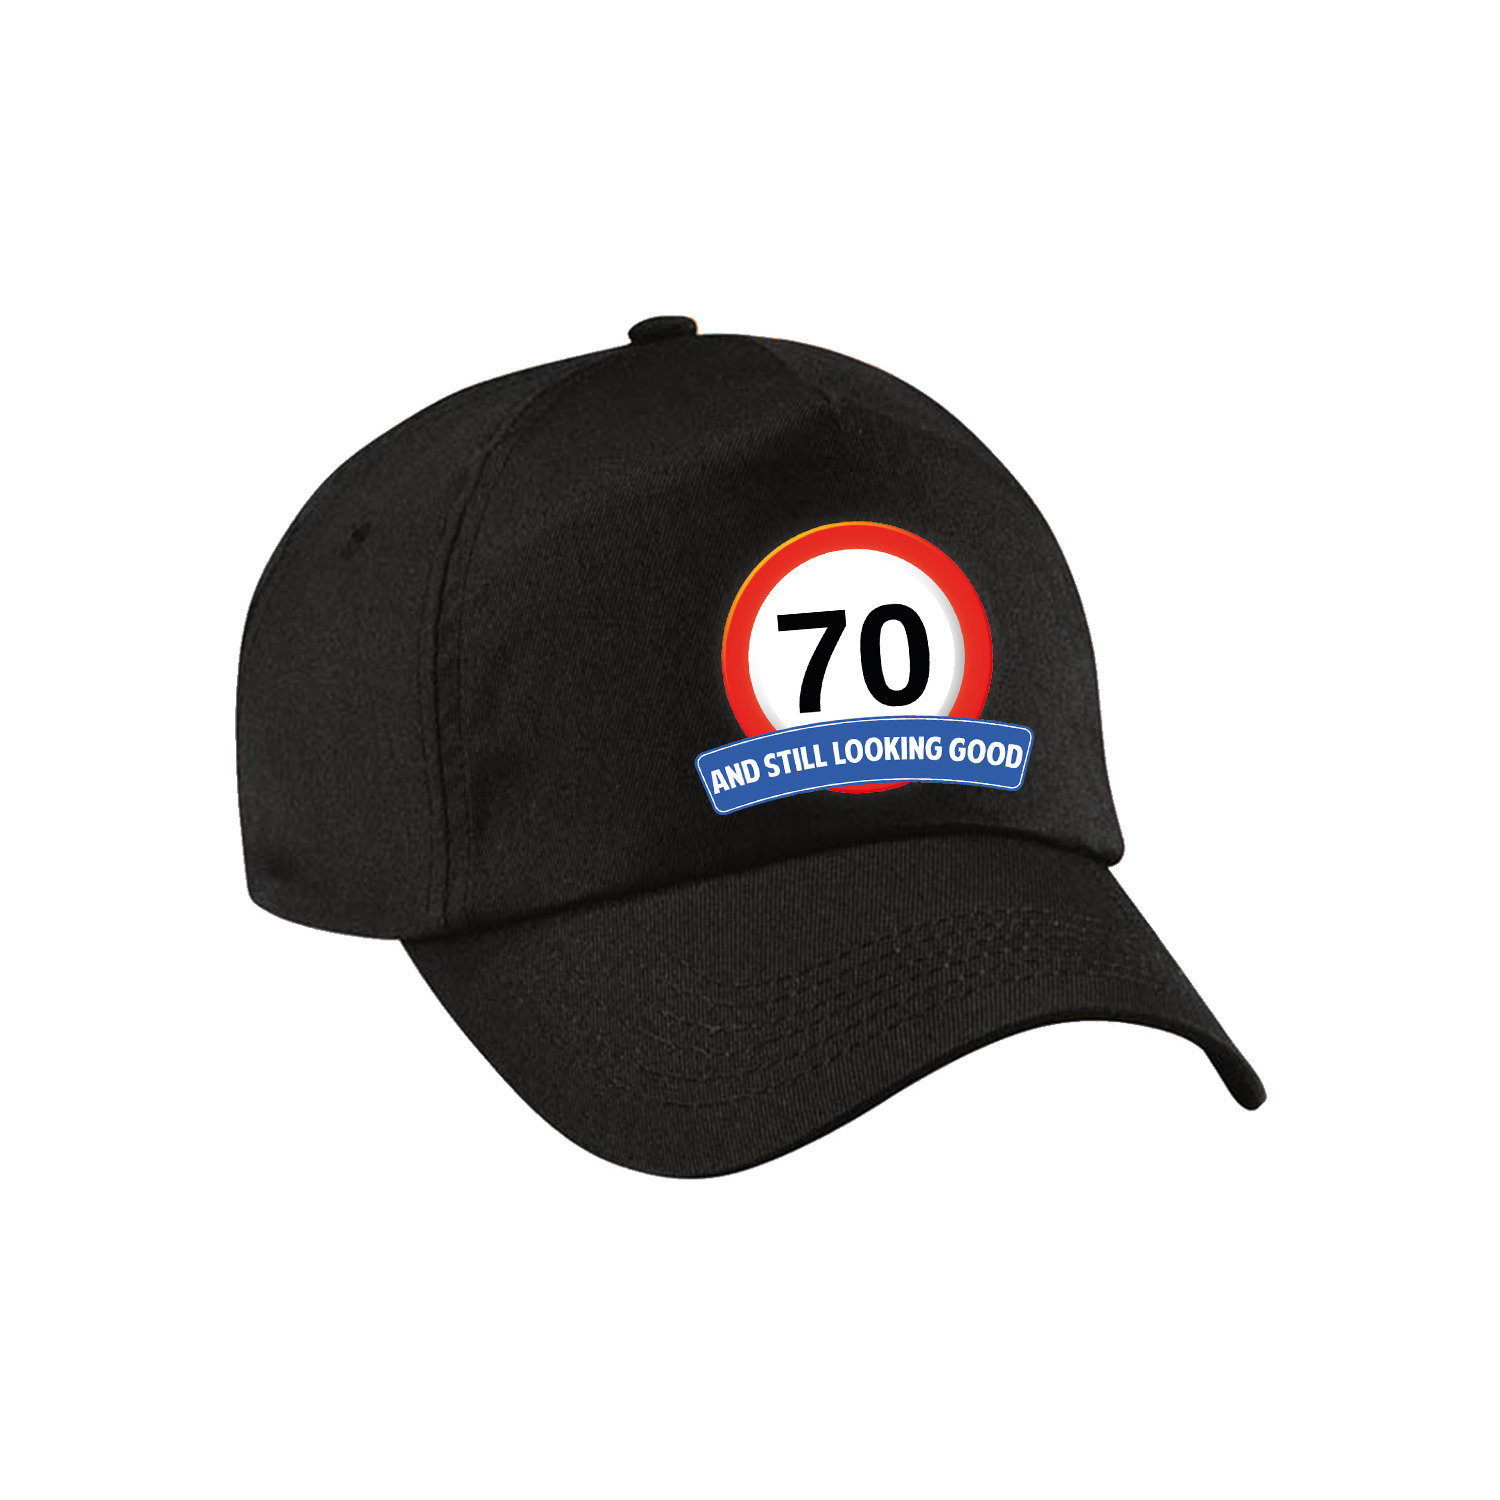 70 and still looking good stopbord pet-cap zwart voor volwassenen